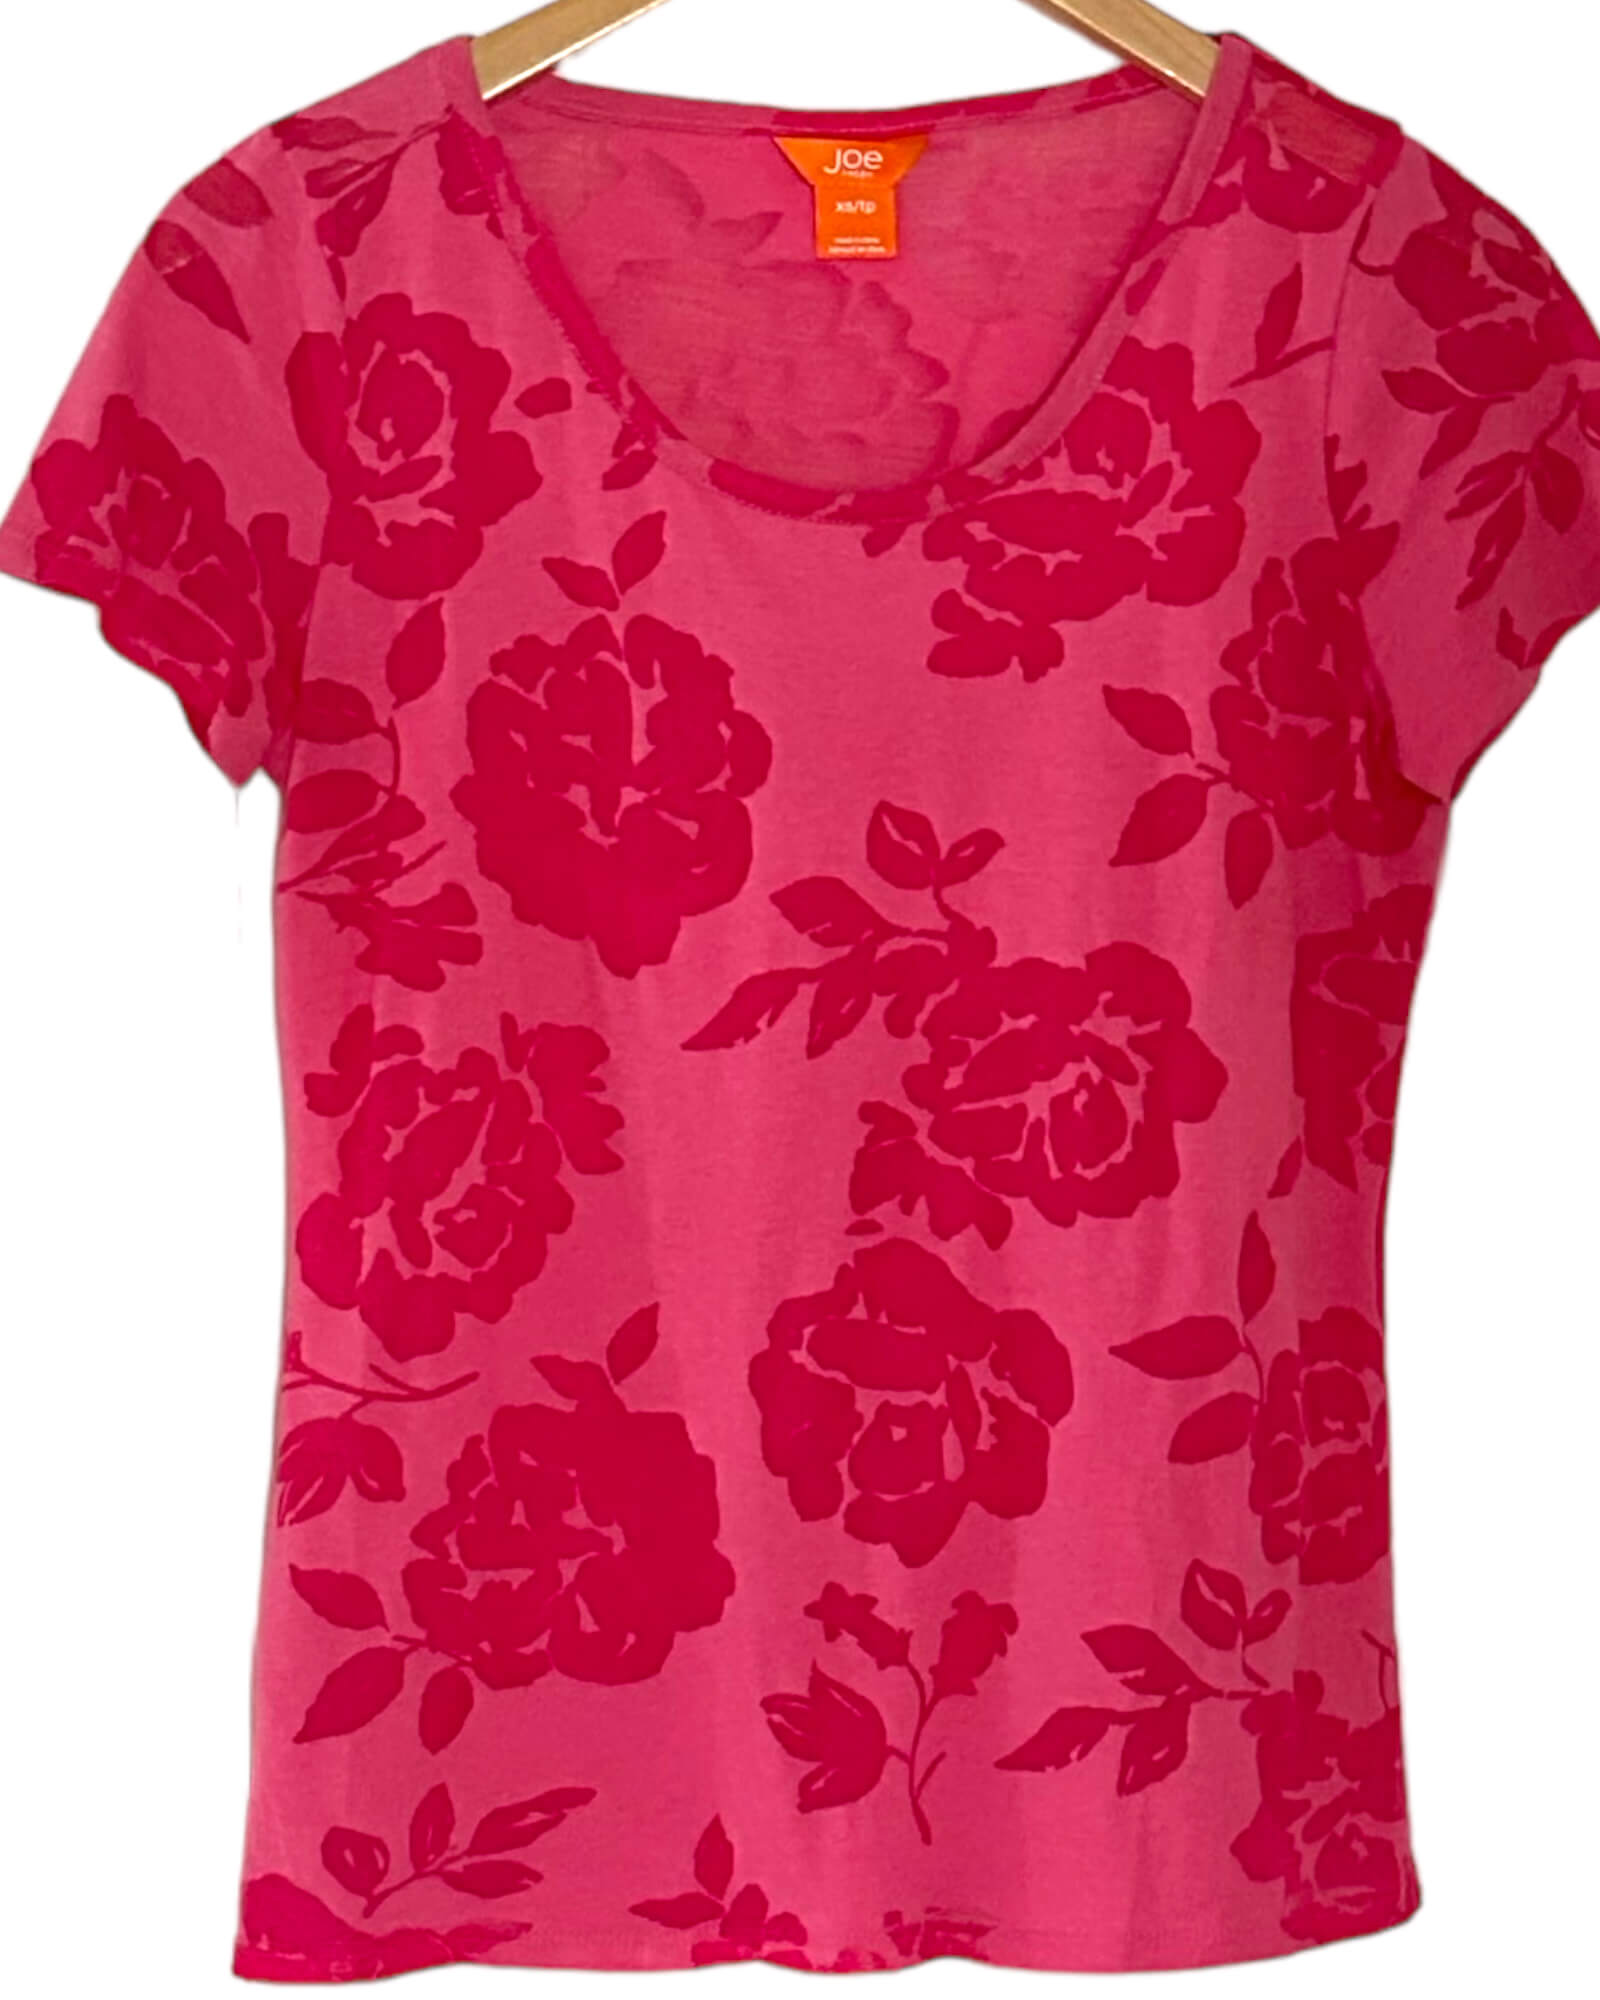 Light Summer JOE FRESH pink rose print tee t-shirt